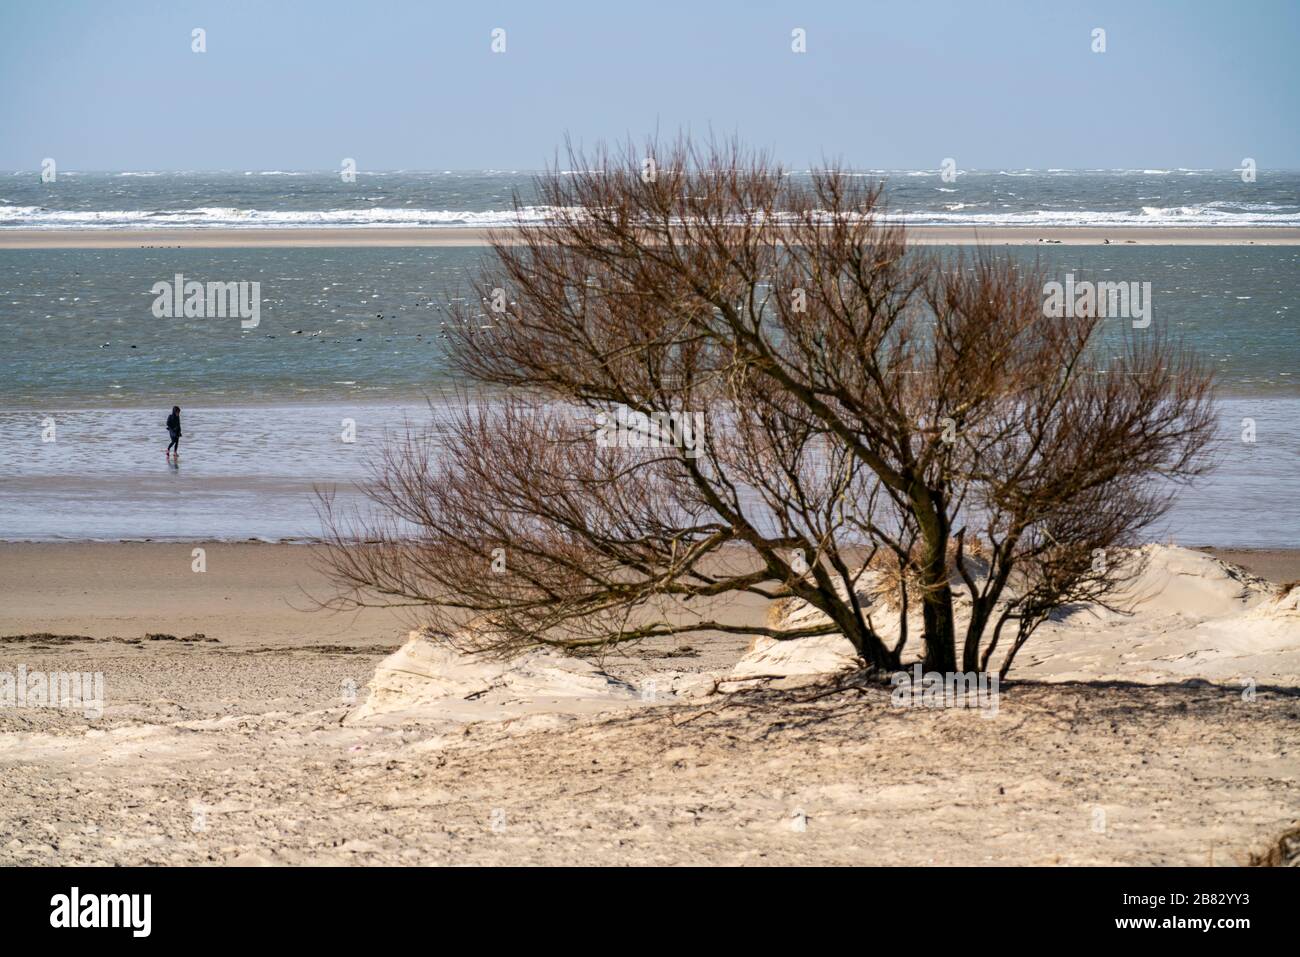 Paisaje de dunas, árbol, árbol de escape de viento, en el oeste de Borkum, isla, Frisia Oriental, invierno, temporada, otoño, Baja Sajonia, Alemania Foto de stock